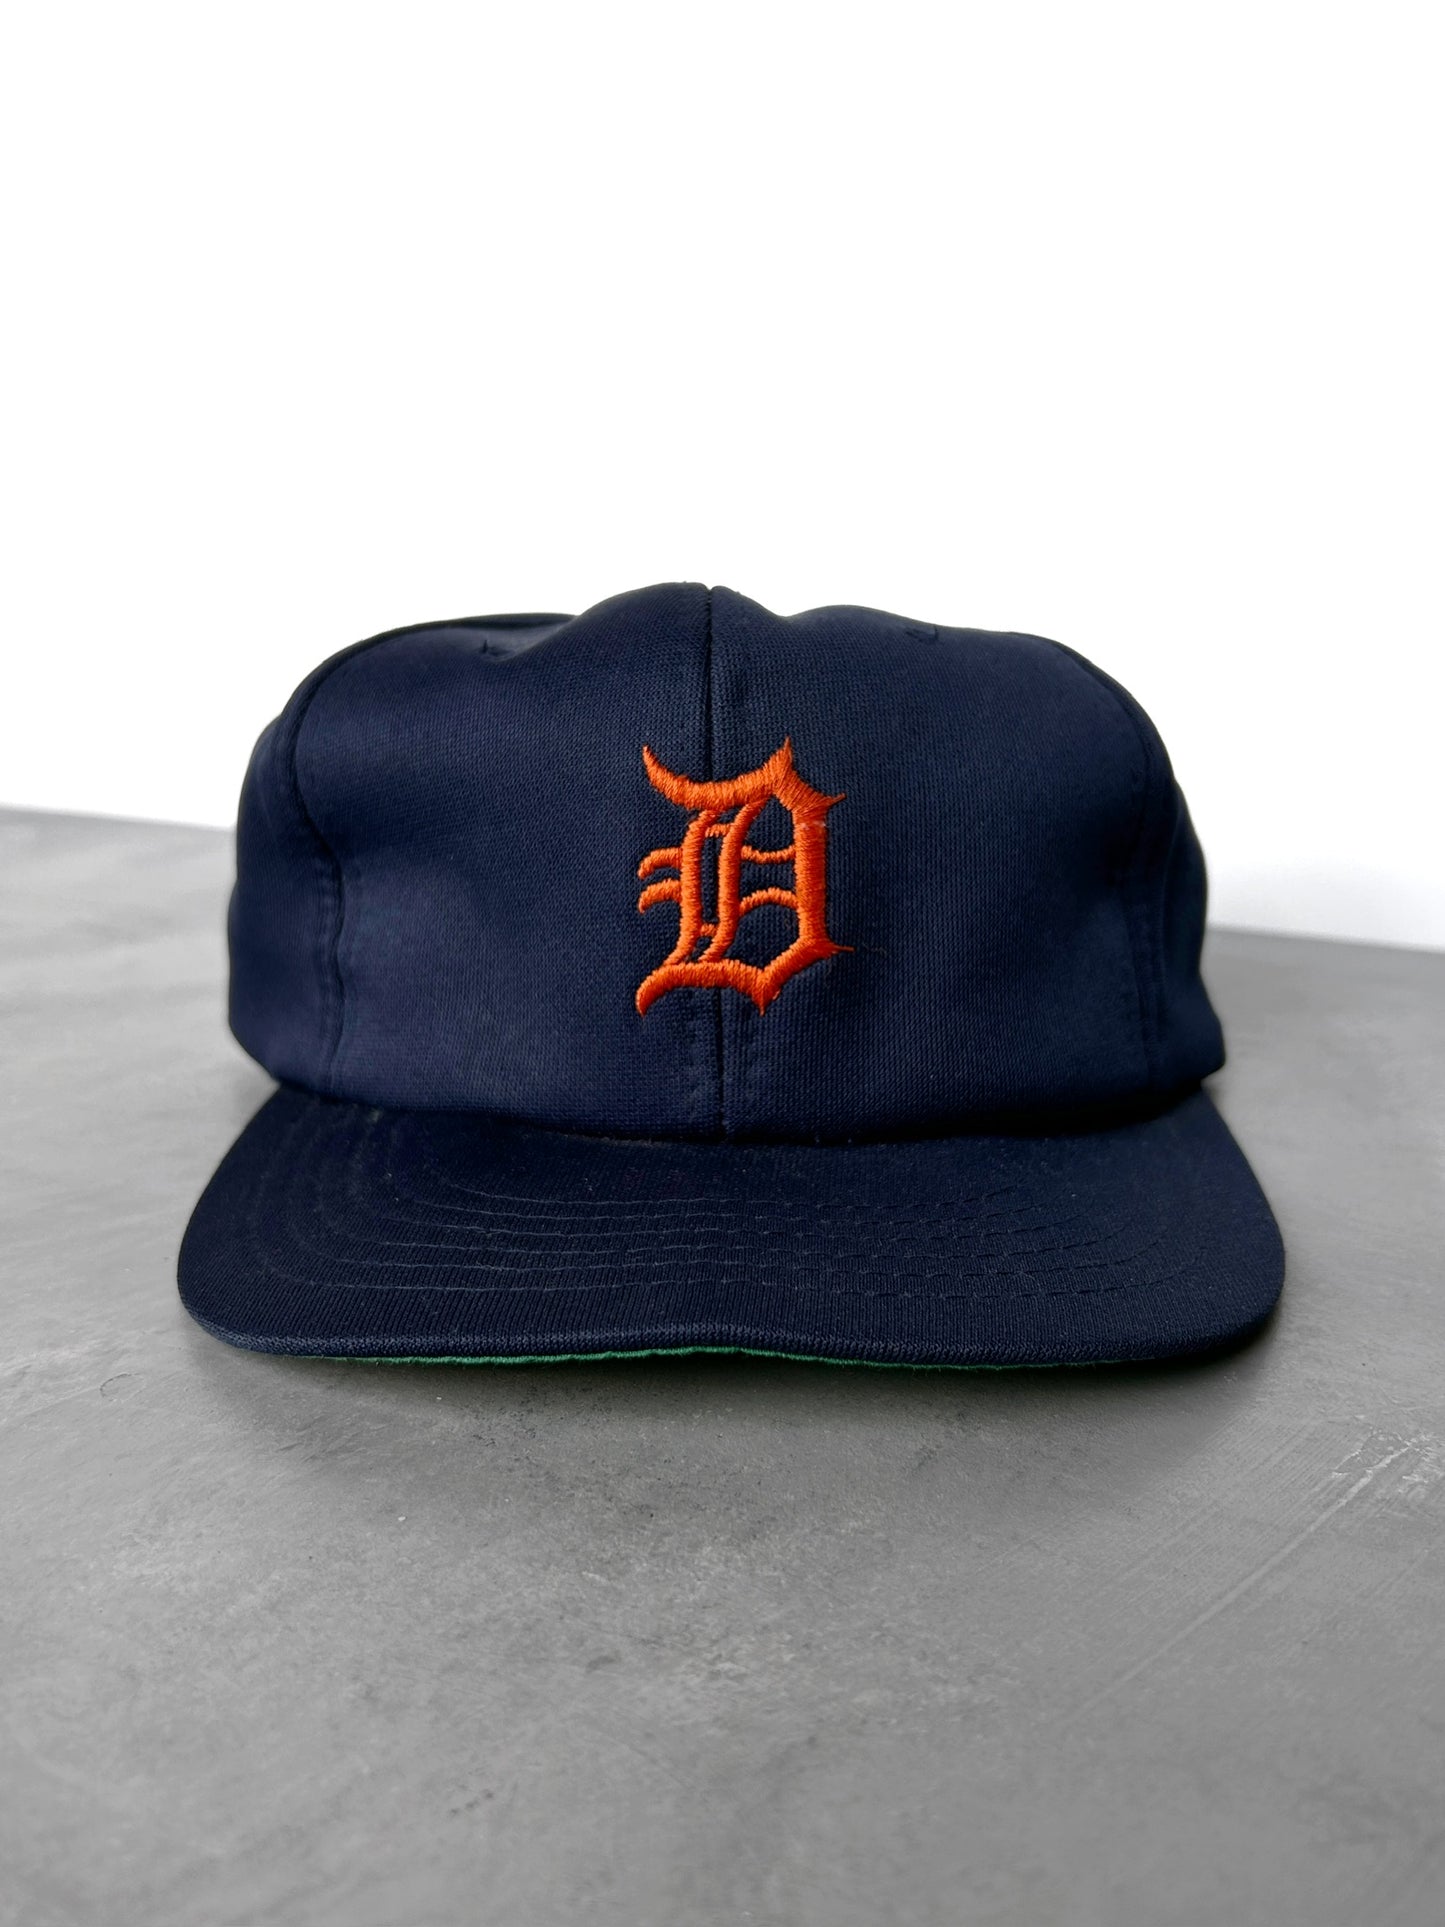 Detroit Tigers Hat 80's